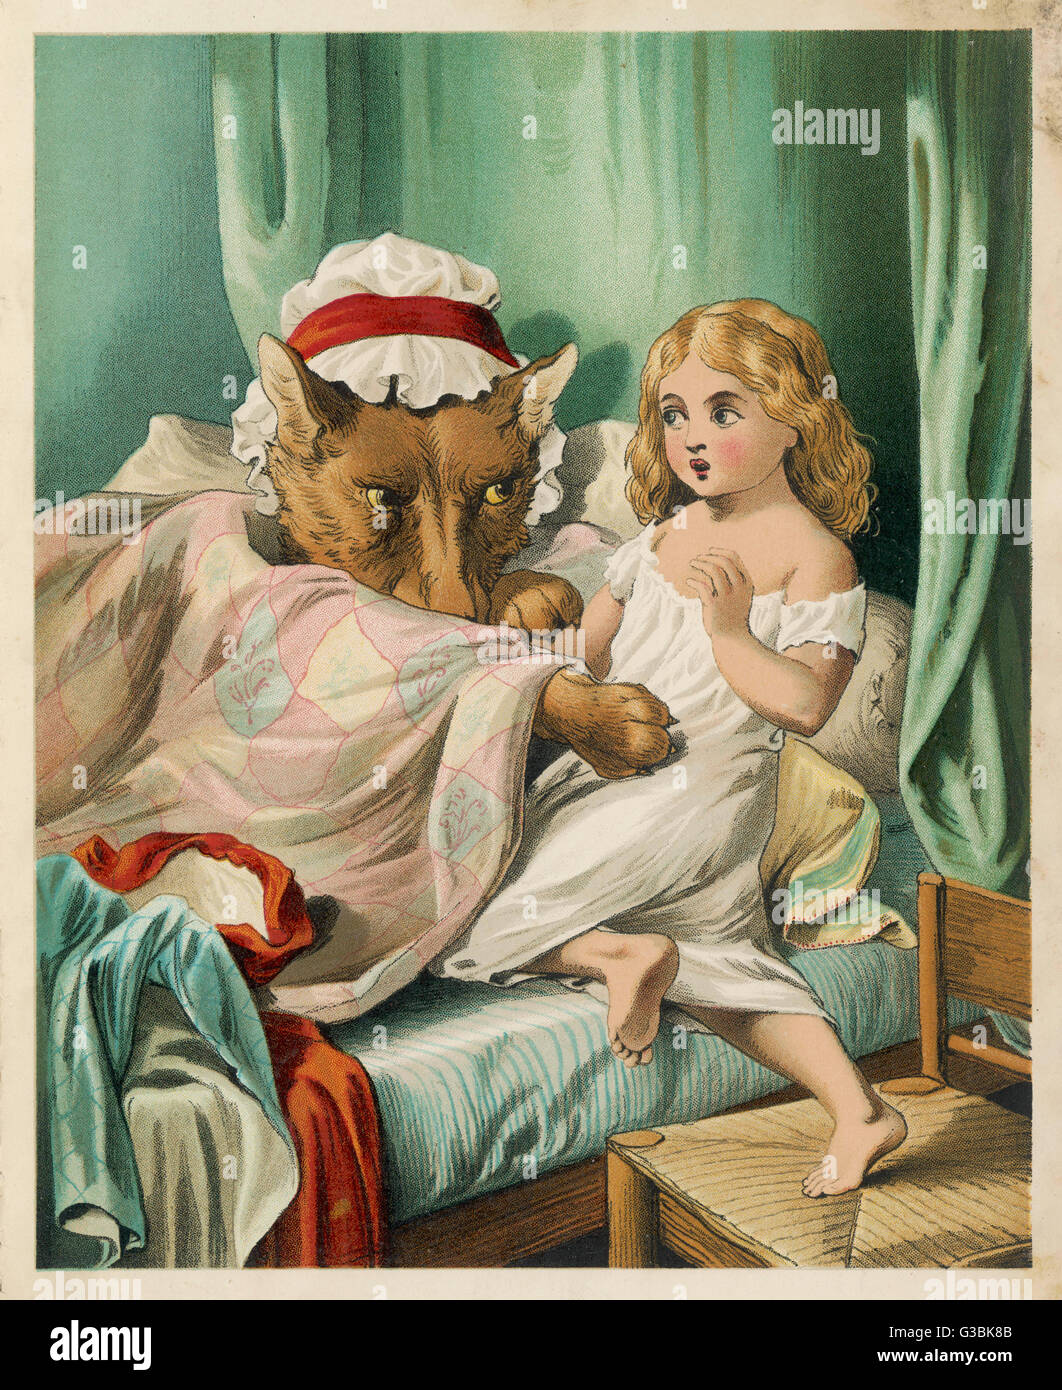 Der böse Wolf verkleidet sich als Red Riding Hood Großmutter und bittet sie, mit ihm ins Bett zu bekommen...      Datum: Ende des 19. Jahrhunderts Stockfoto